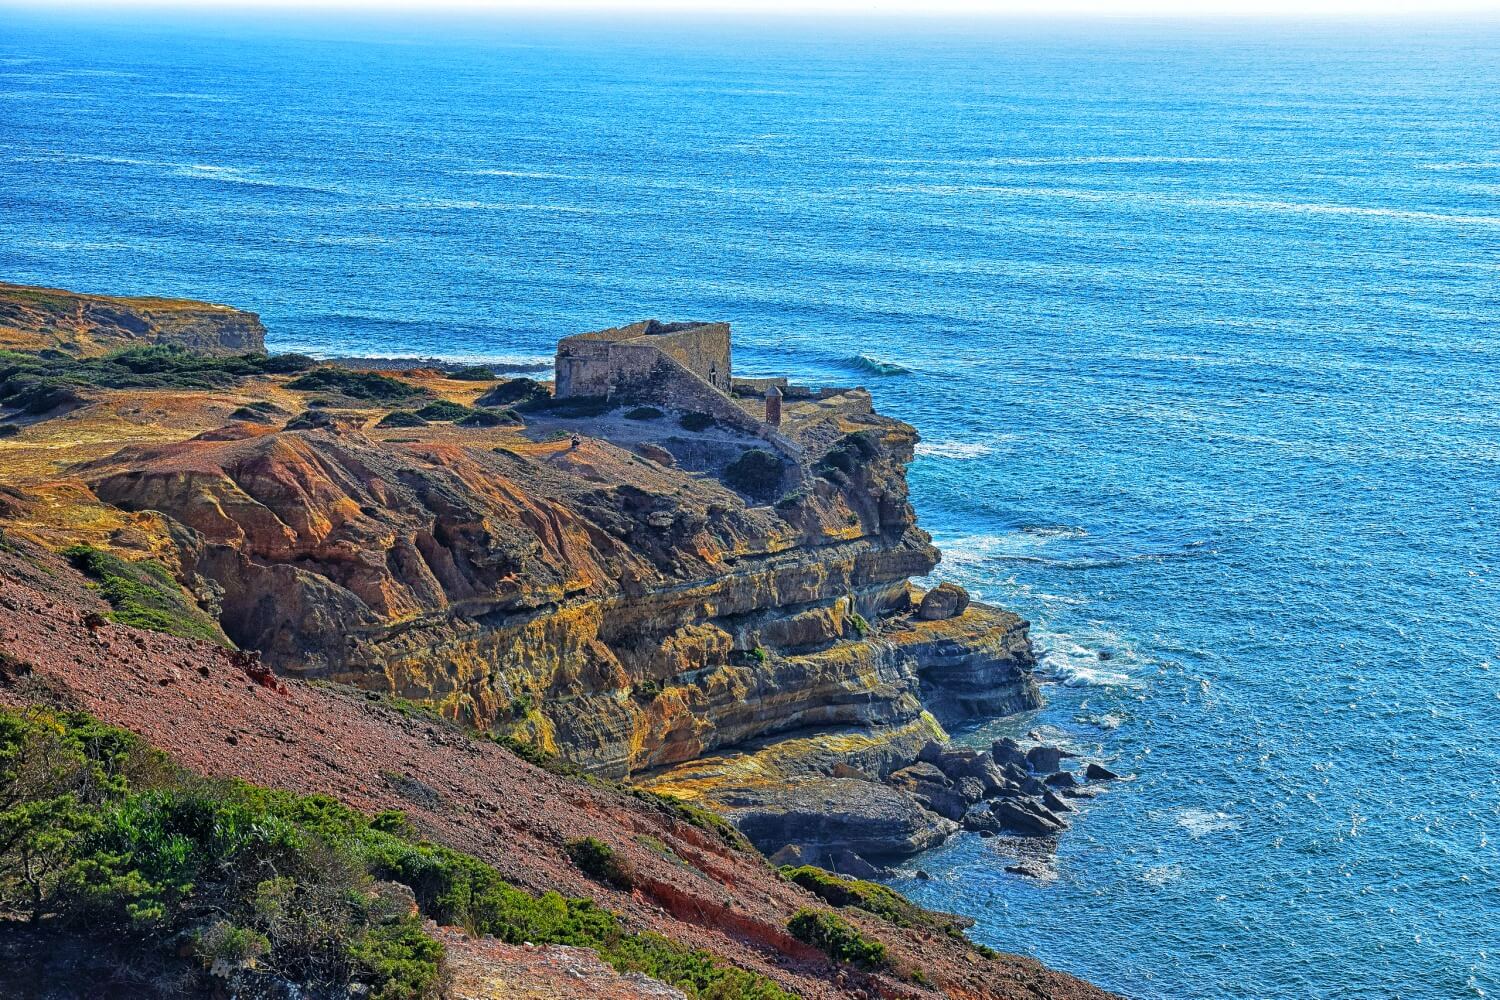 Fort of Milreu